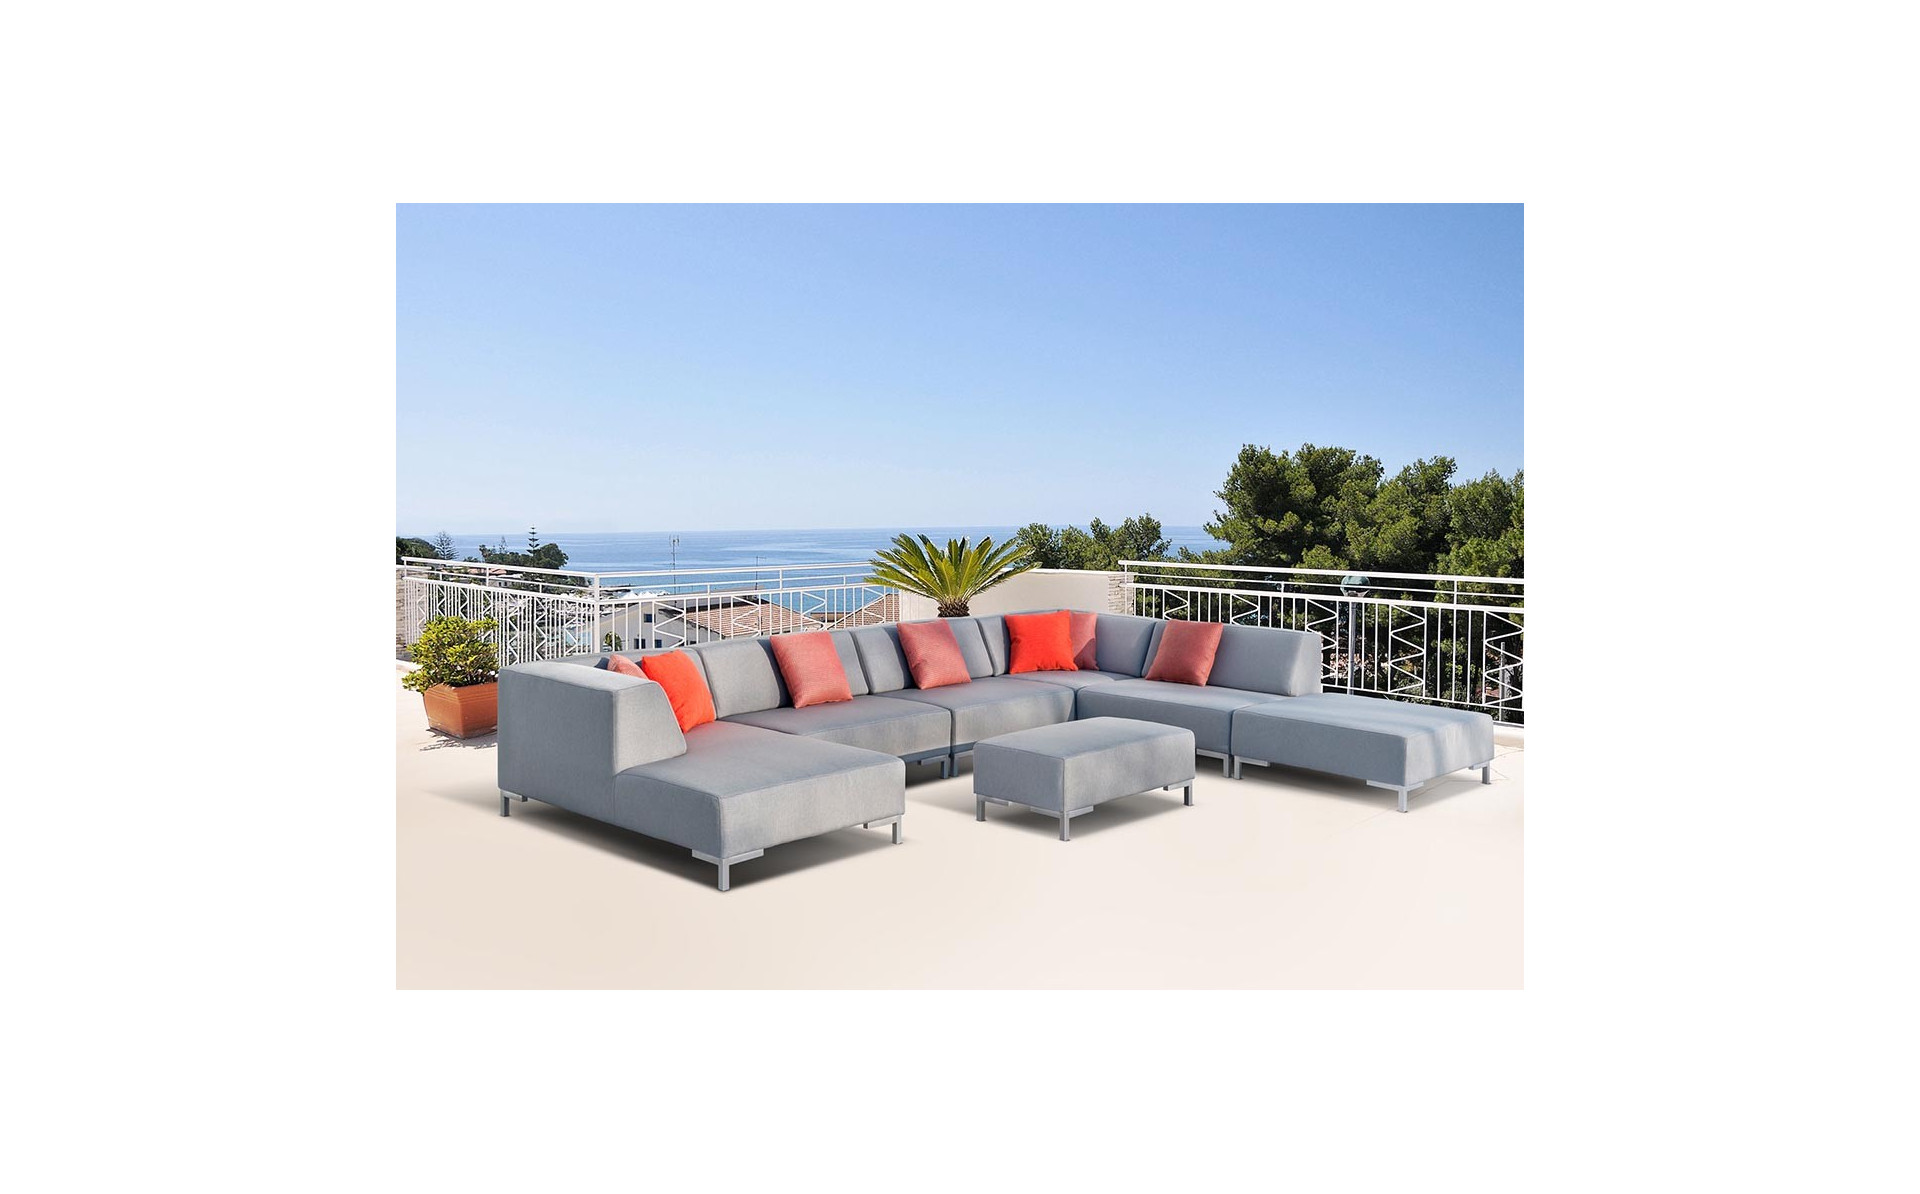 Całoroczna sofa ogrodowa Vanilla 170x303x300cm z pufą 100x60cm